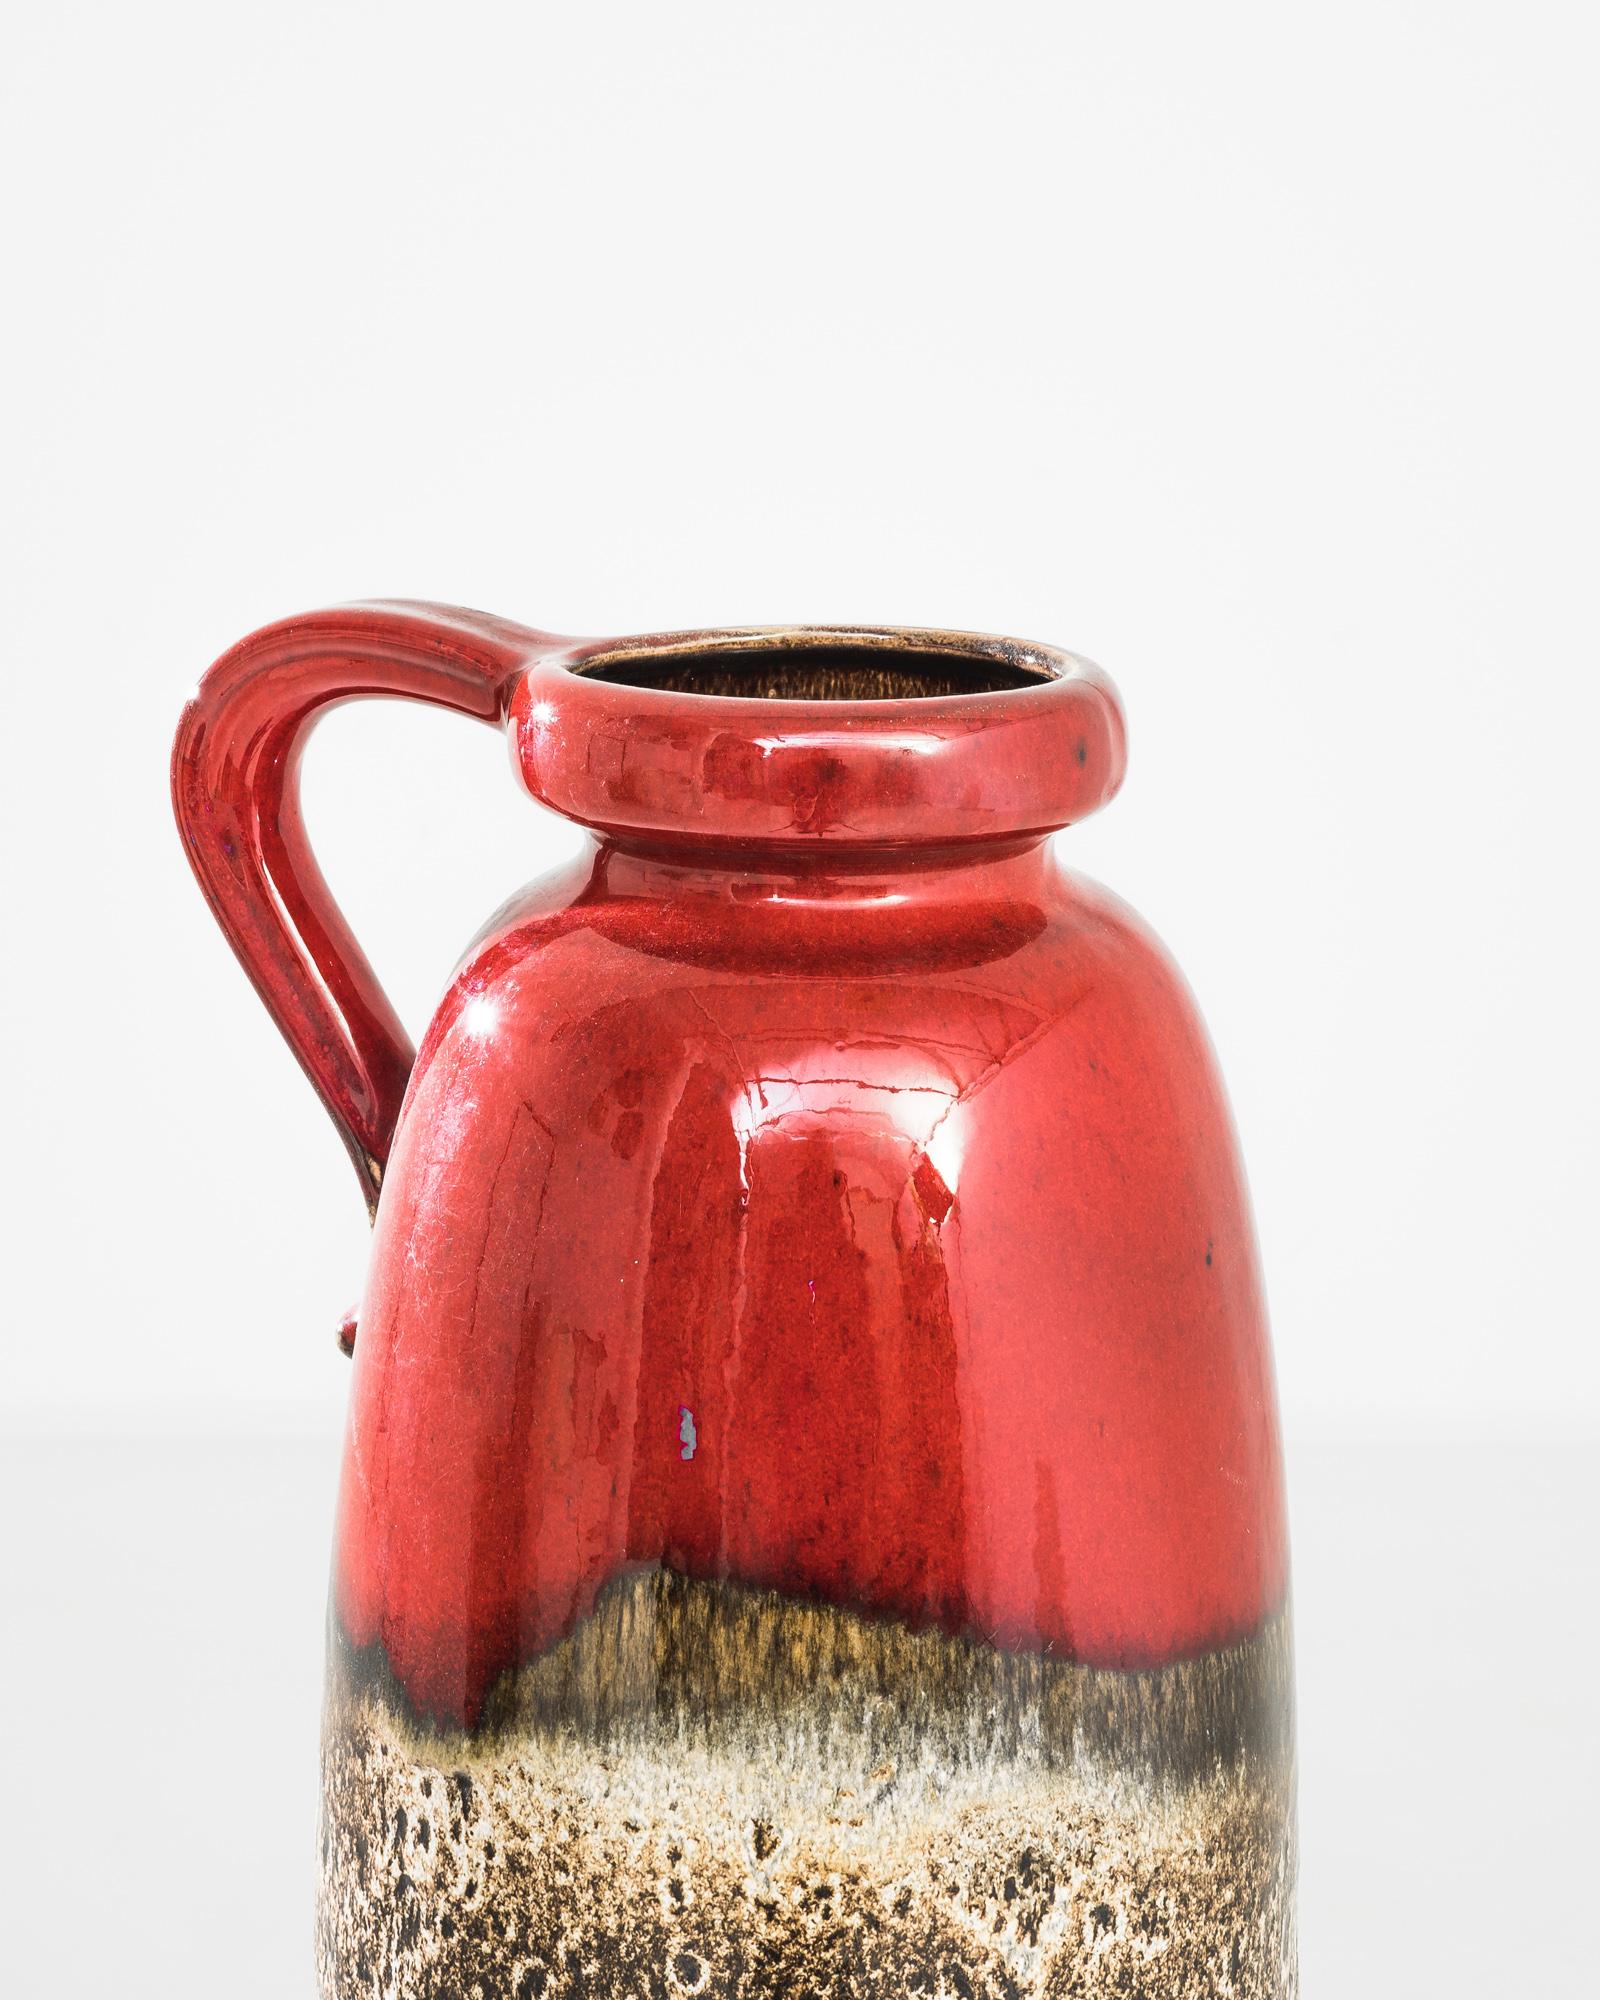 Diese lebhafte westdeutsche Keramikvase aus den 1960er Jahren ist ein großartiges Beispiel für modernes Design aus der Mitte des Jahrhunderts. Die kräftige rote Glasur, die sanft in ein gesprenkeltes, natürliches Finish übergeht, zieht die Blicke